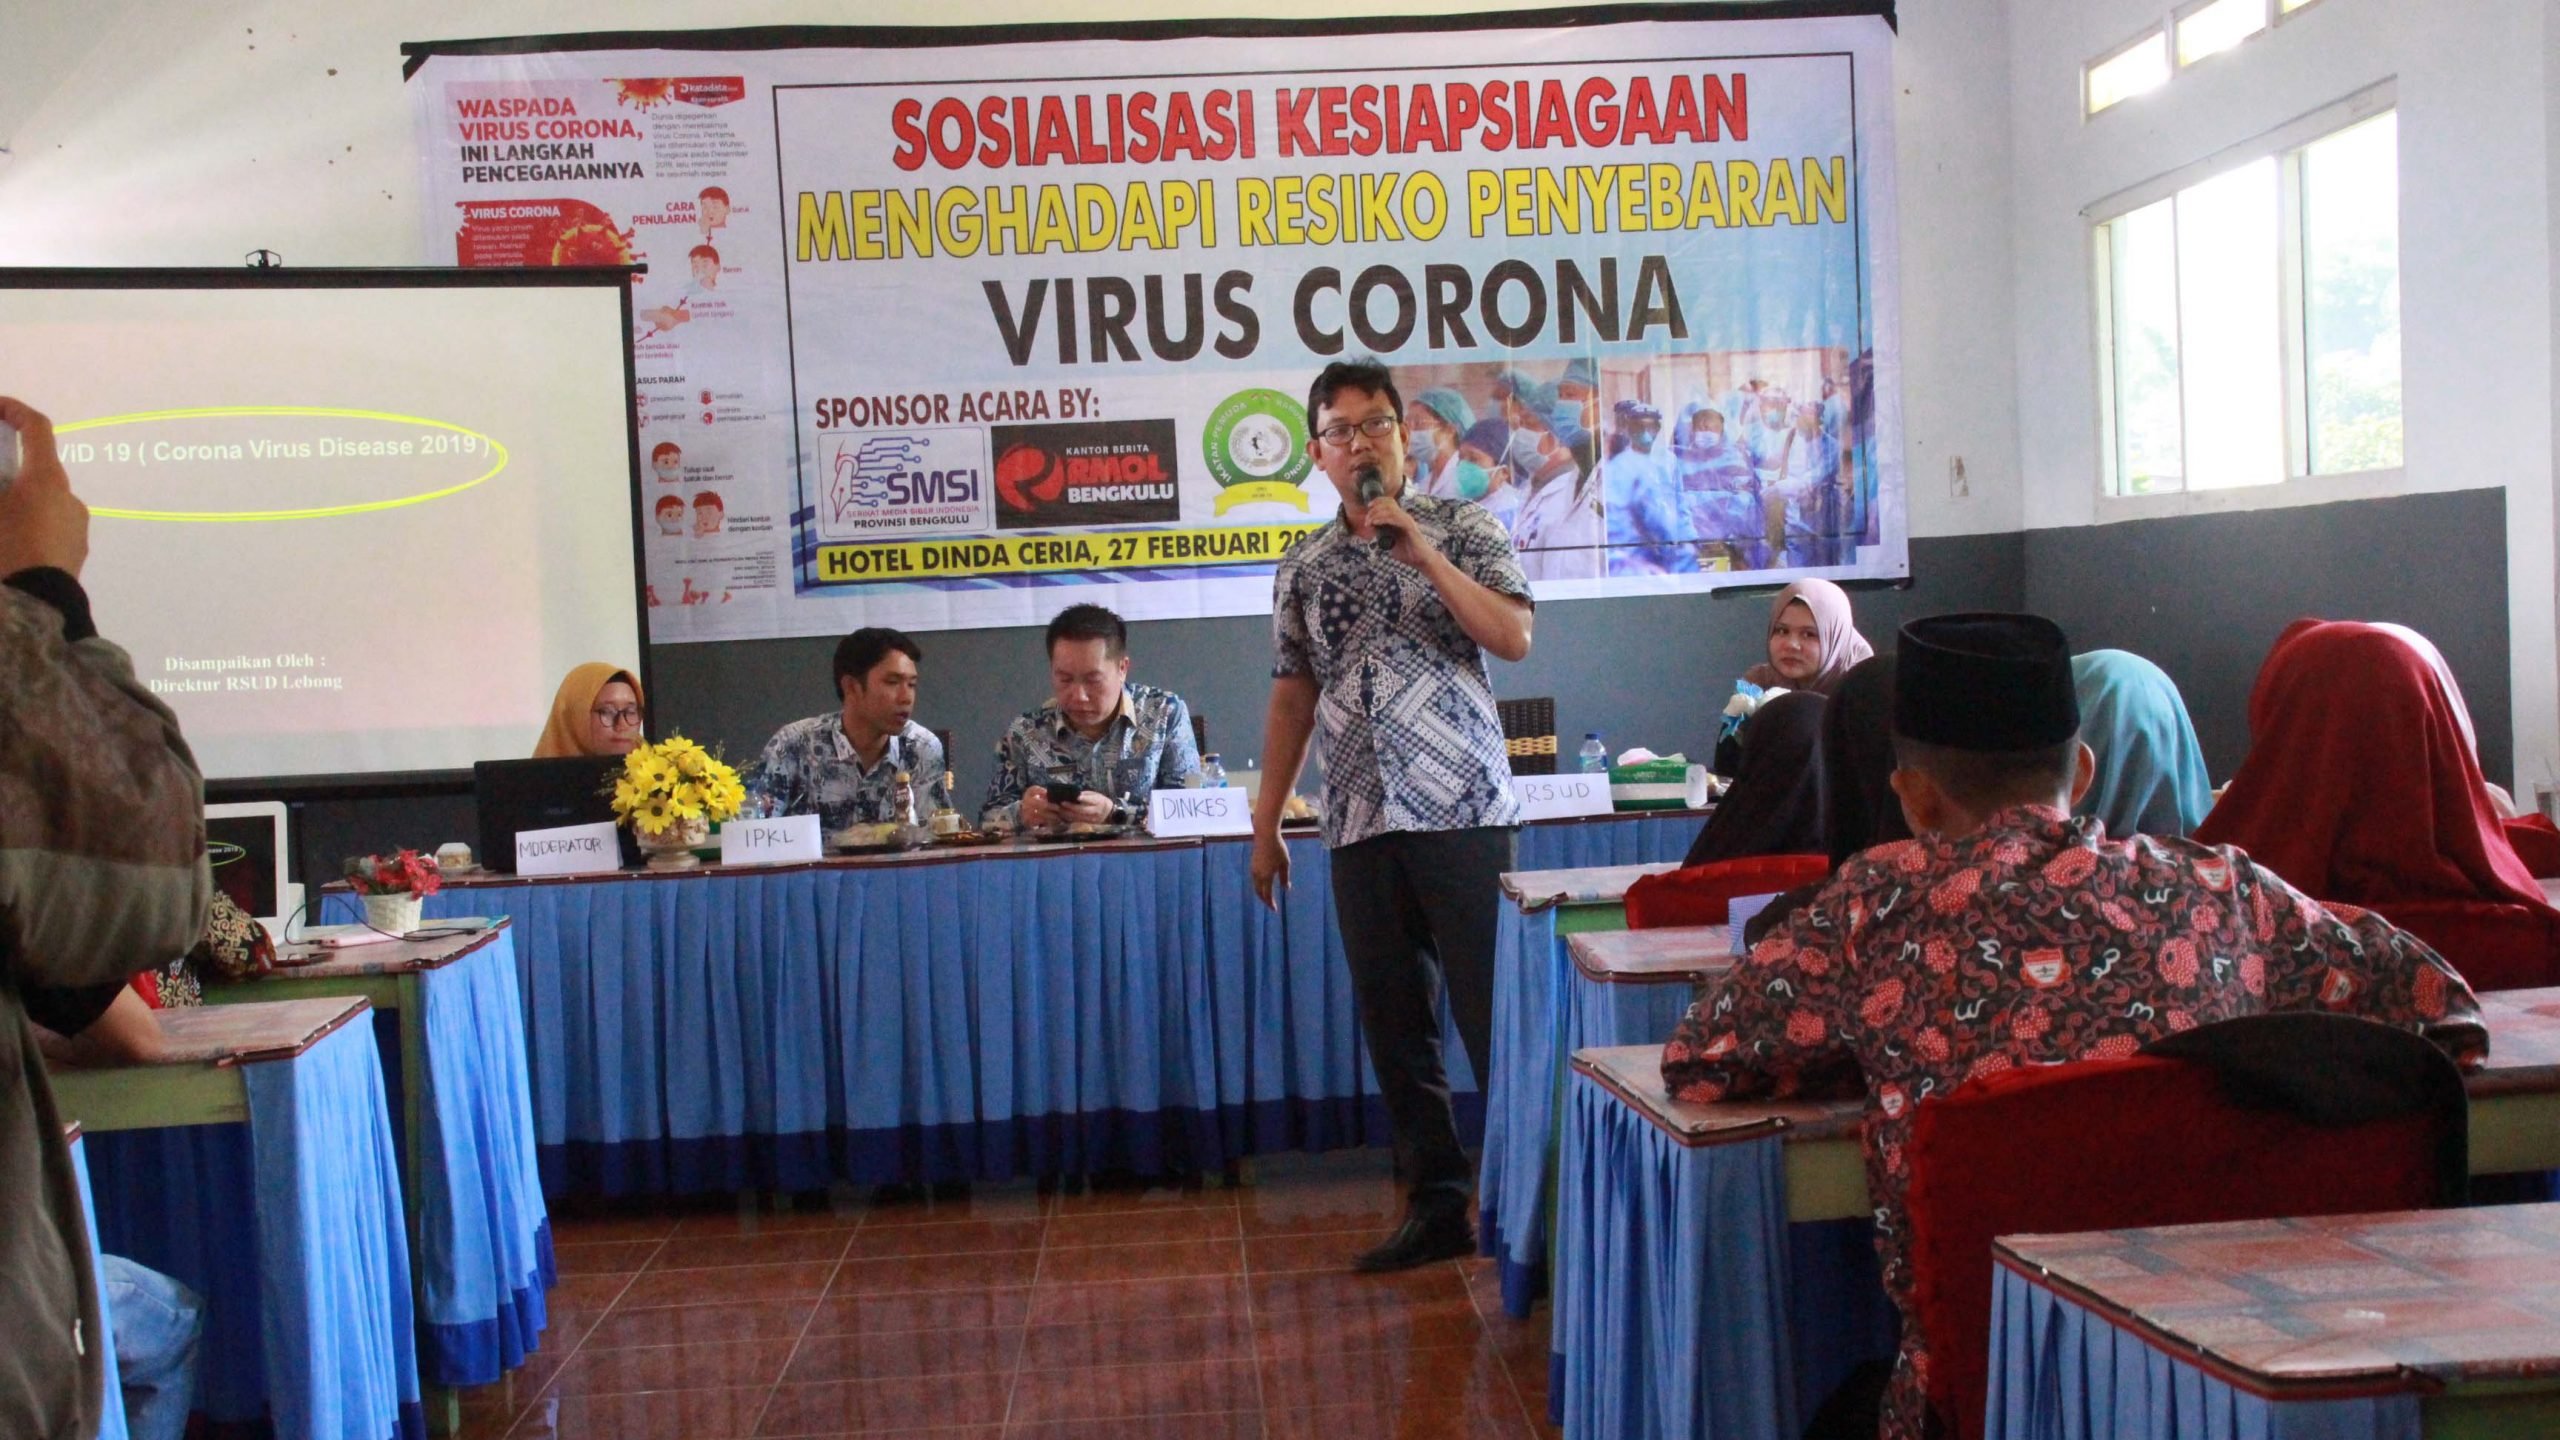 Kejar Beasiswa ke Luar Negeri, Jangan Takut Virus Corona